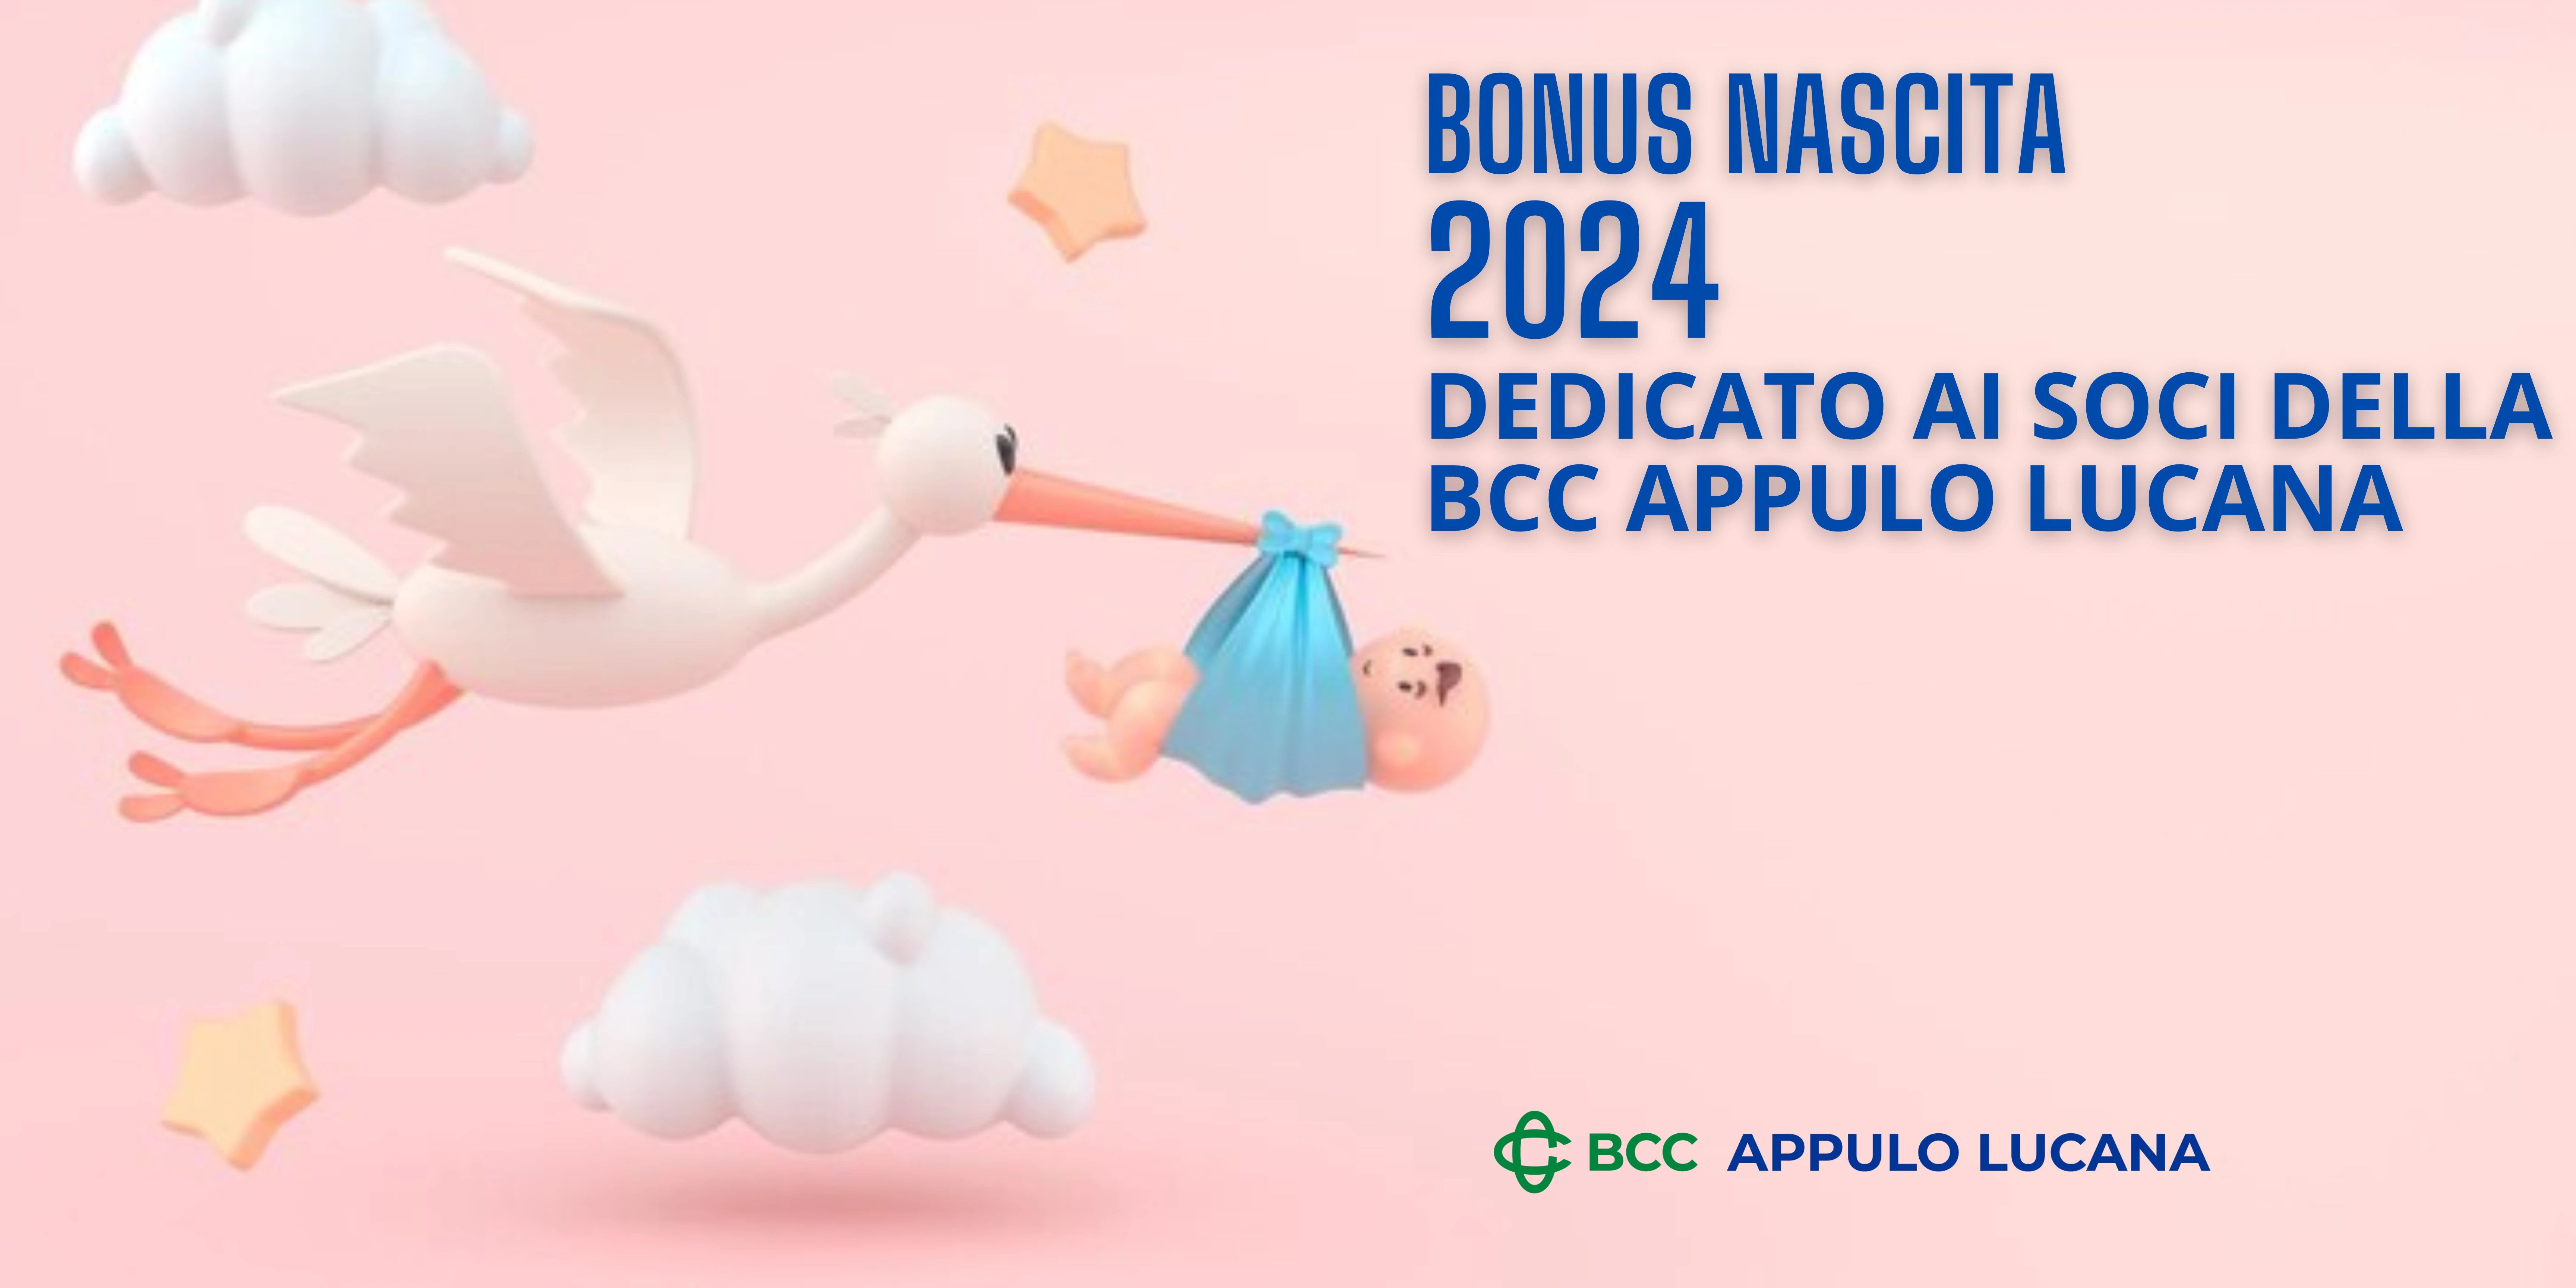 Bonus Nascita 2024 Dedicato ai Soci della BCC Appulo Lucana